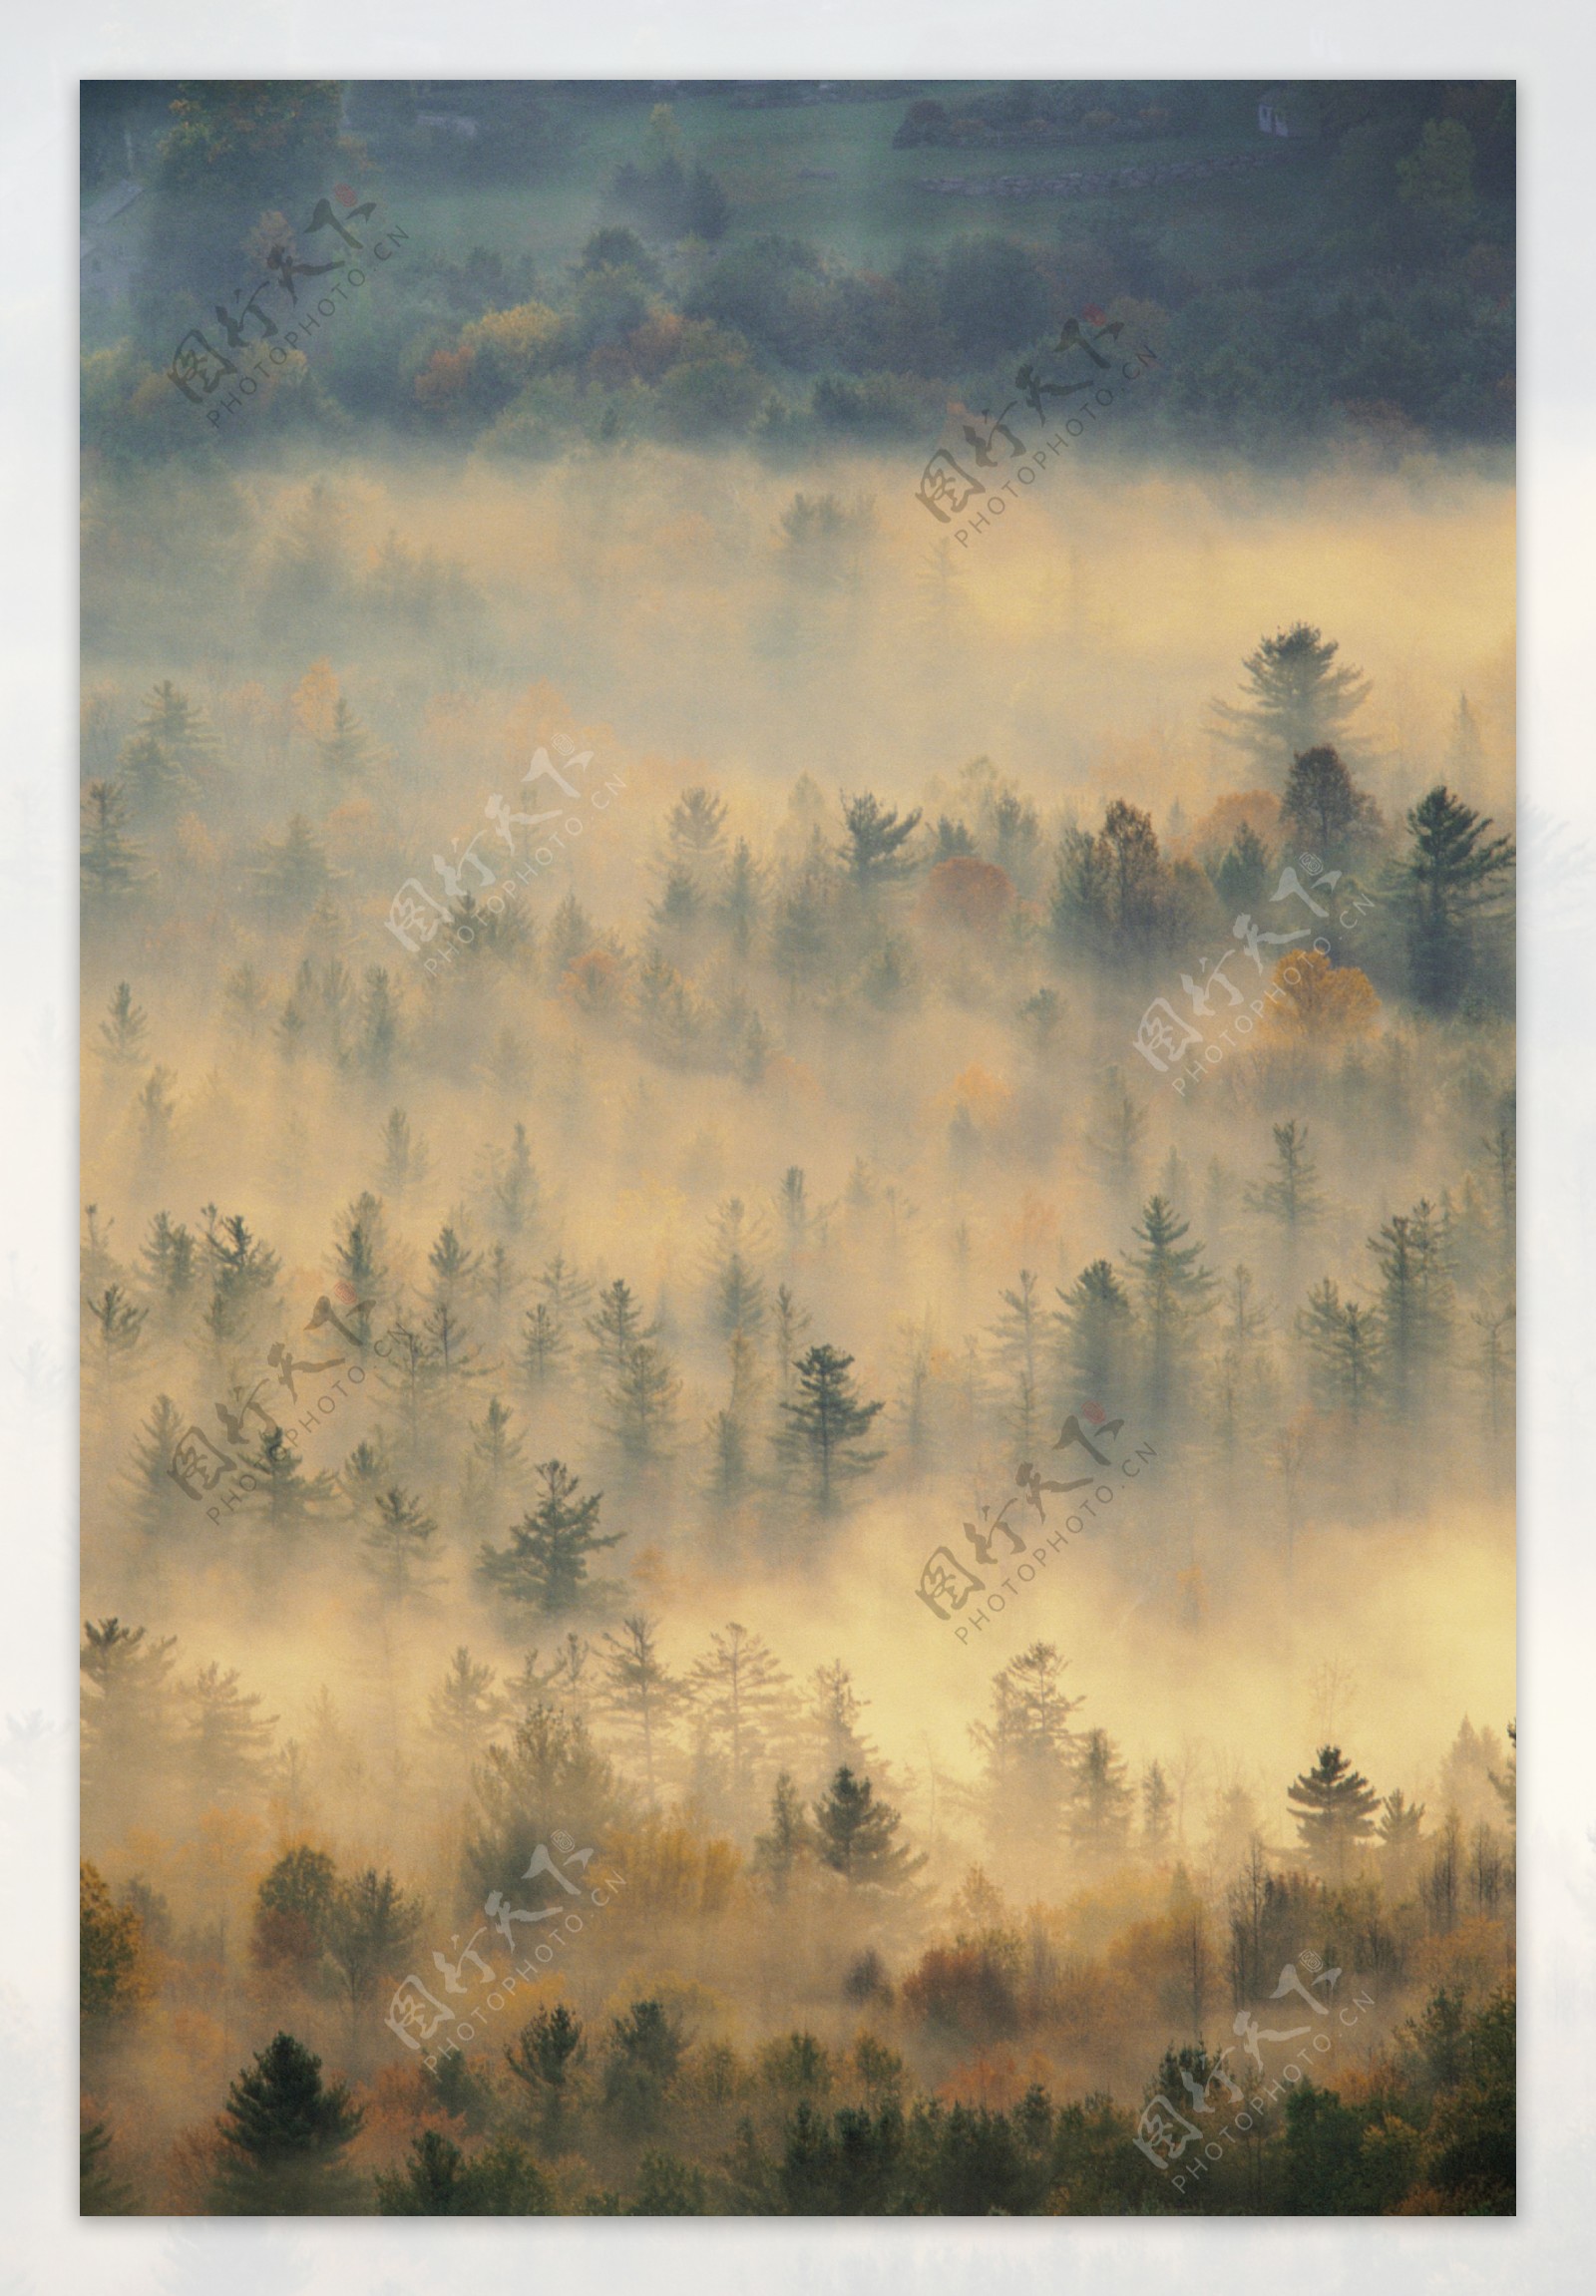 大雾时的森林图片